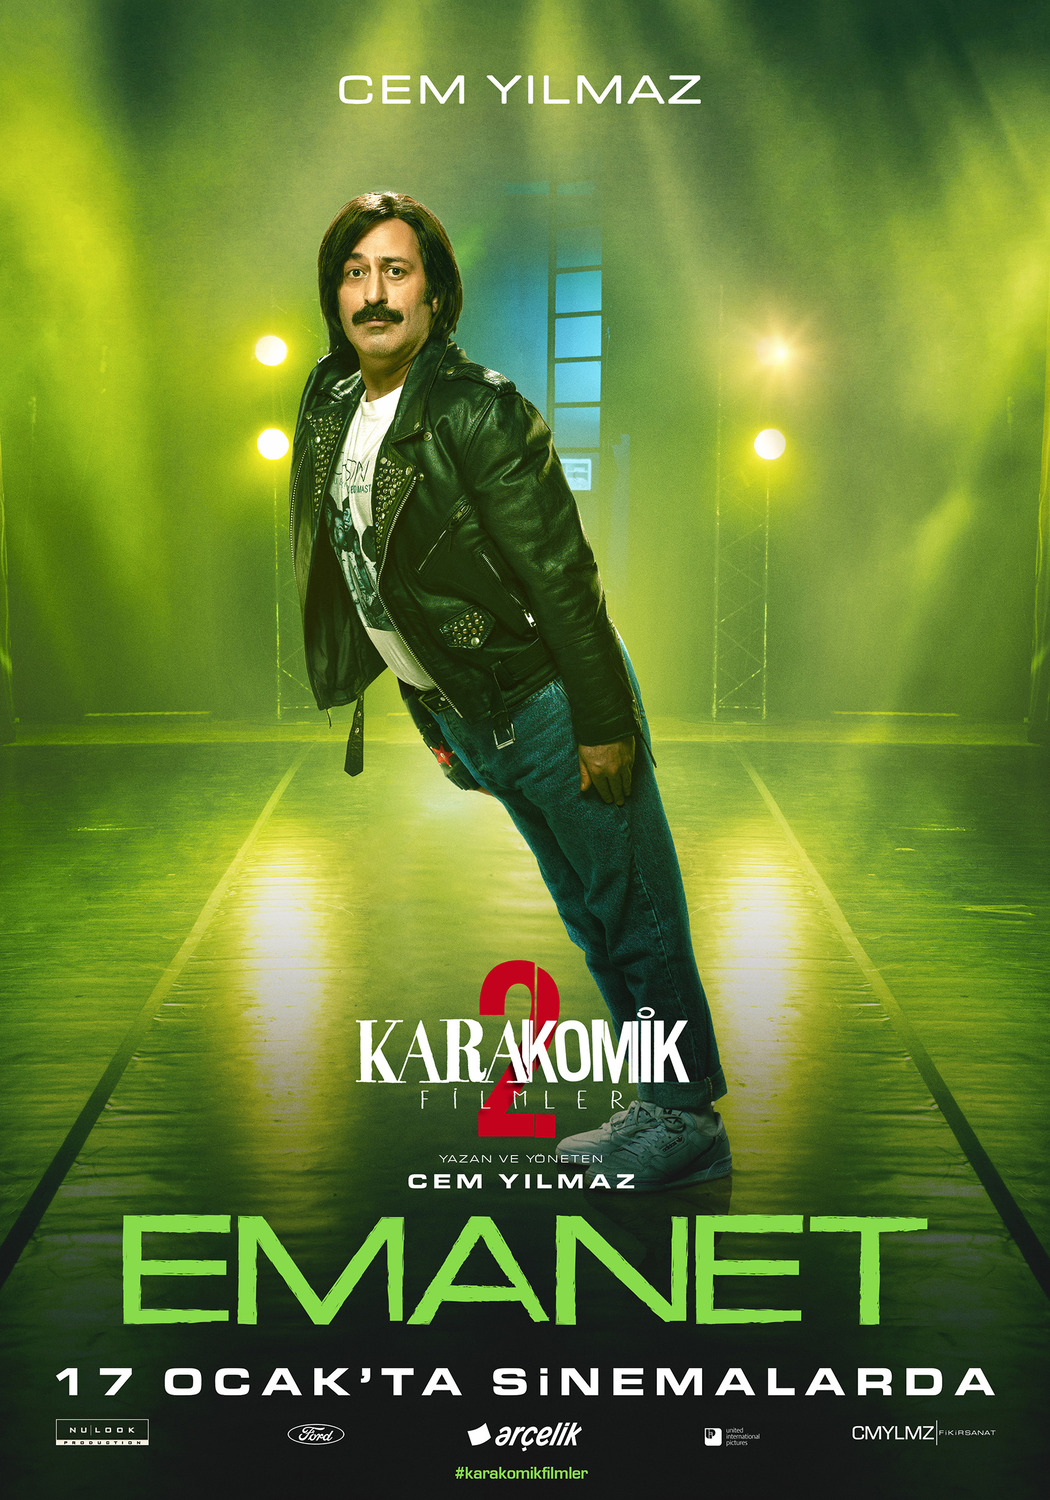 Extra Large Movie Poster Image for Karakomik Filmler: Emanet (#3 of 5)